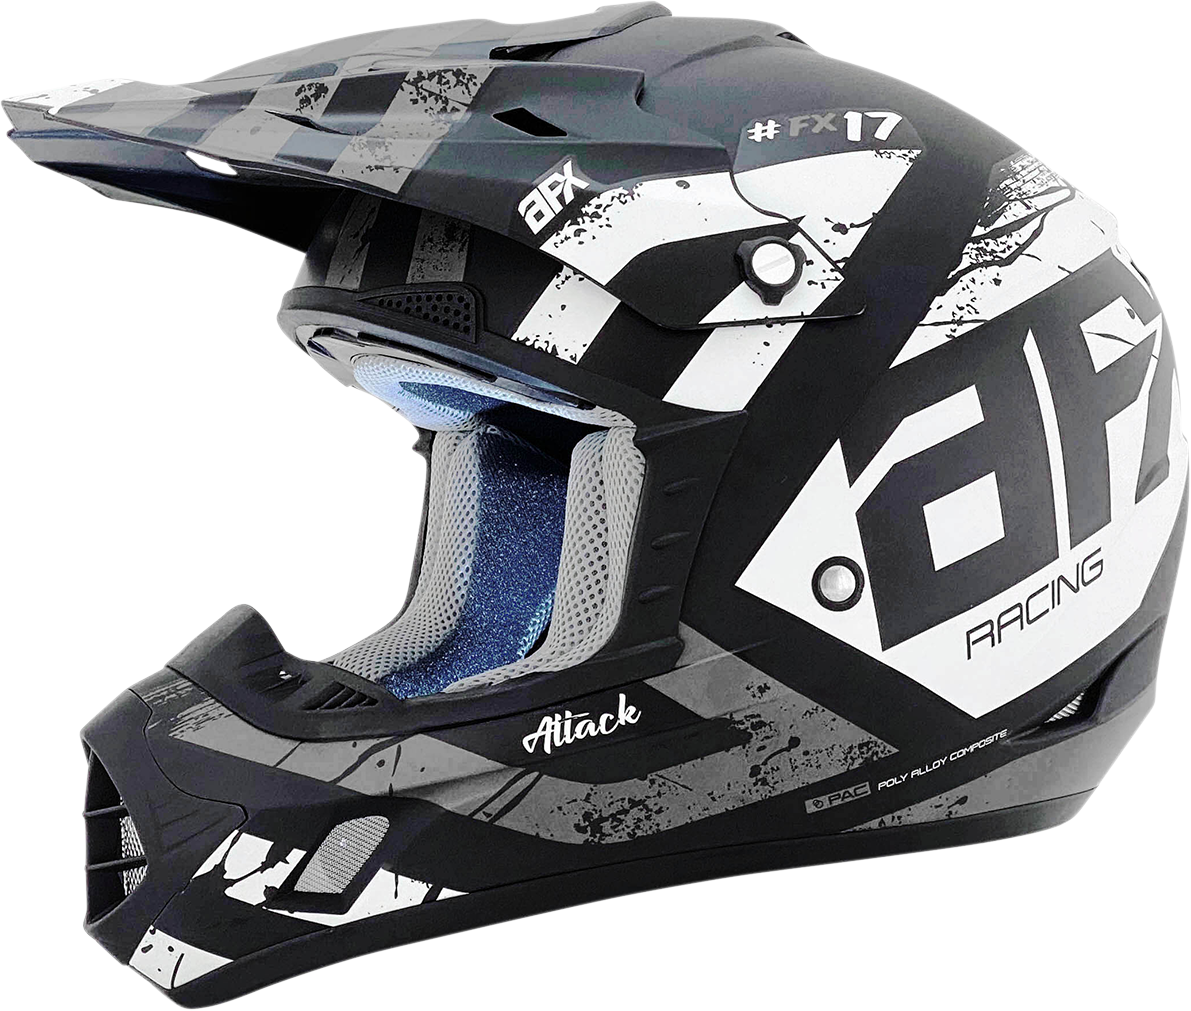 AFX FX-17 Helmet - Attack - Matte Black/Silver - Large 0110-7145